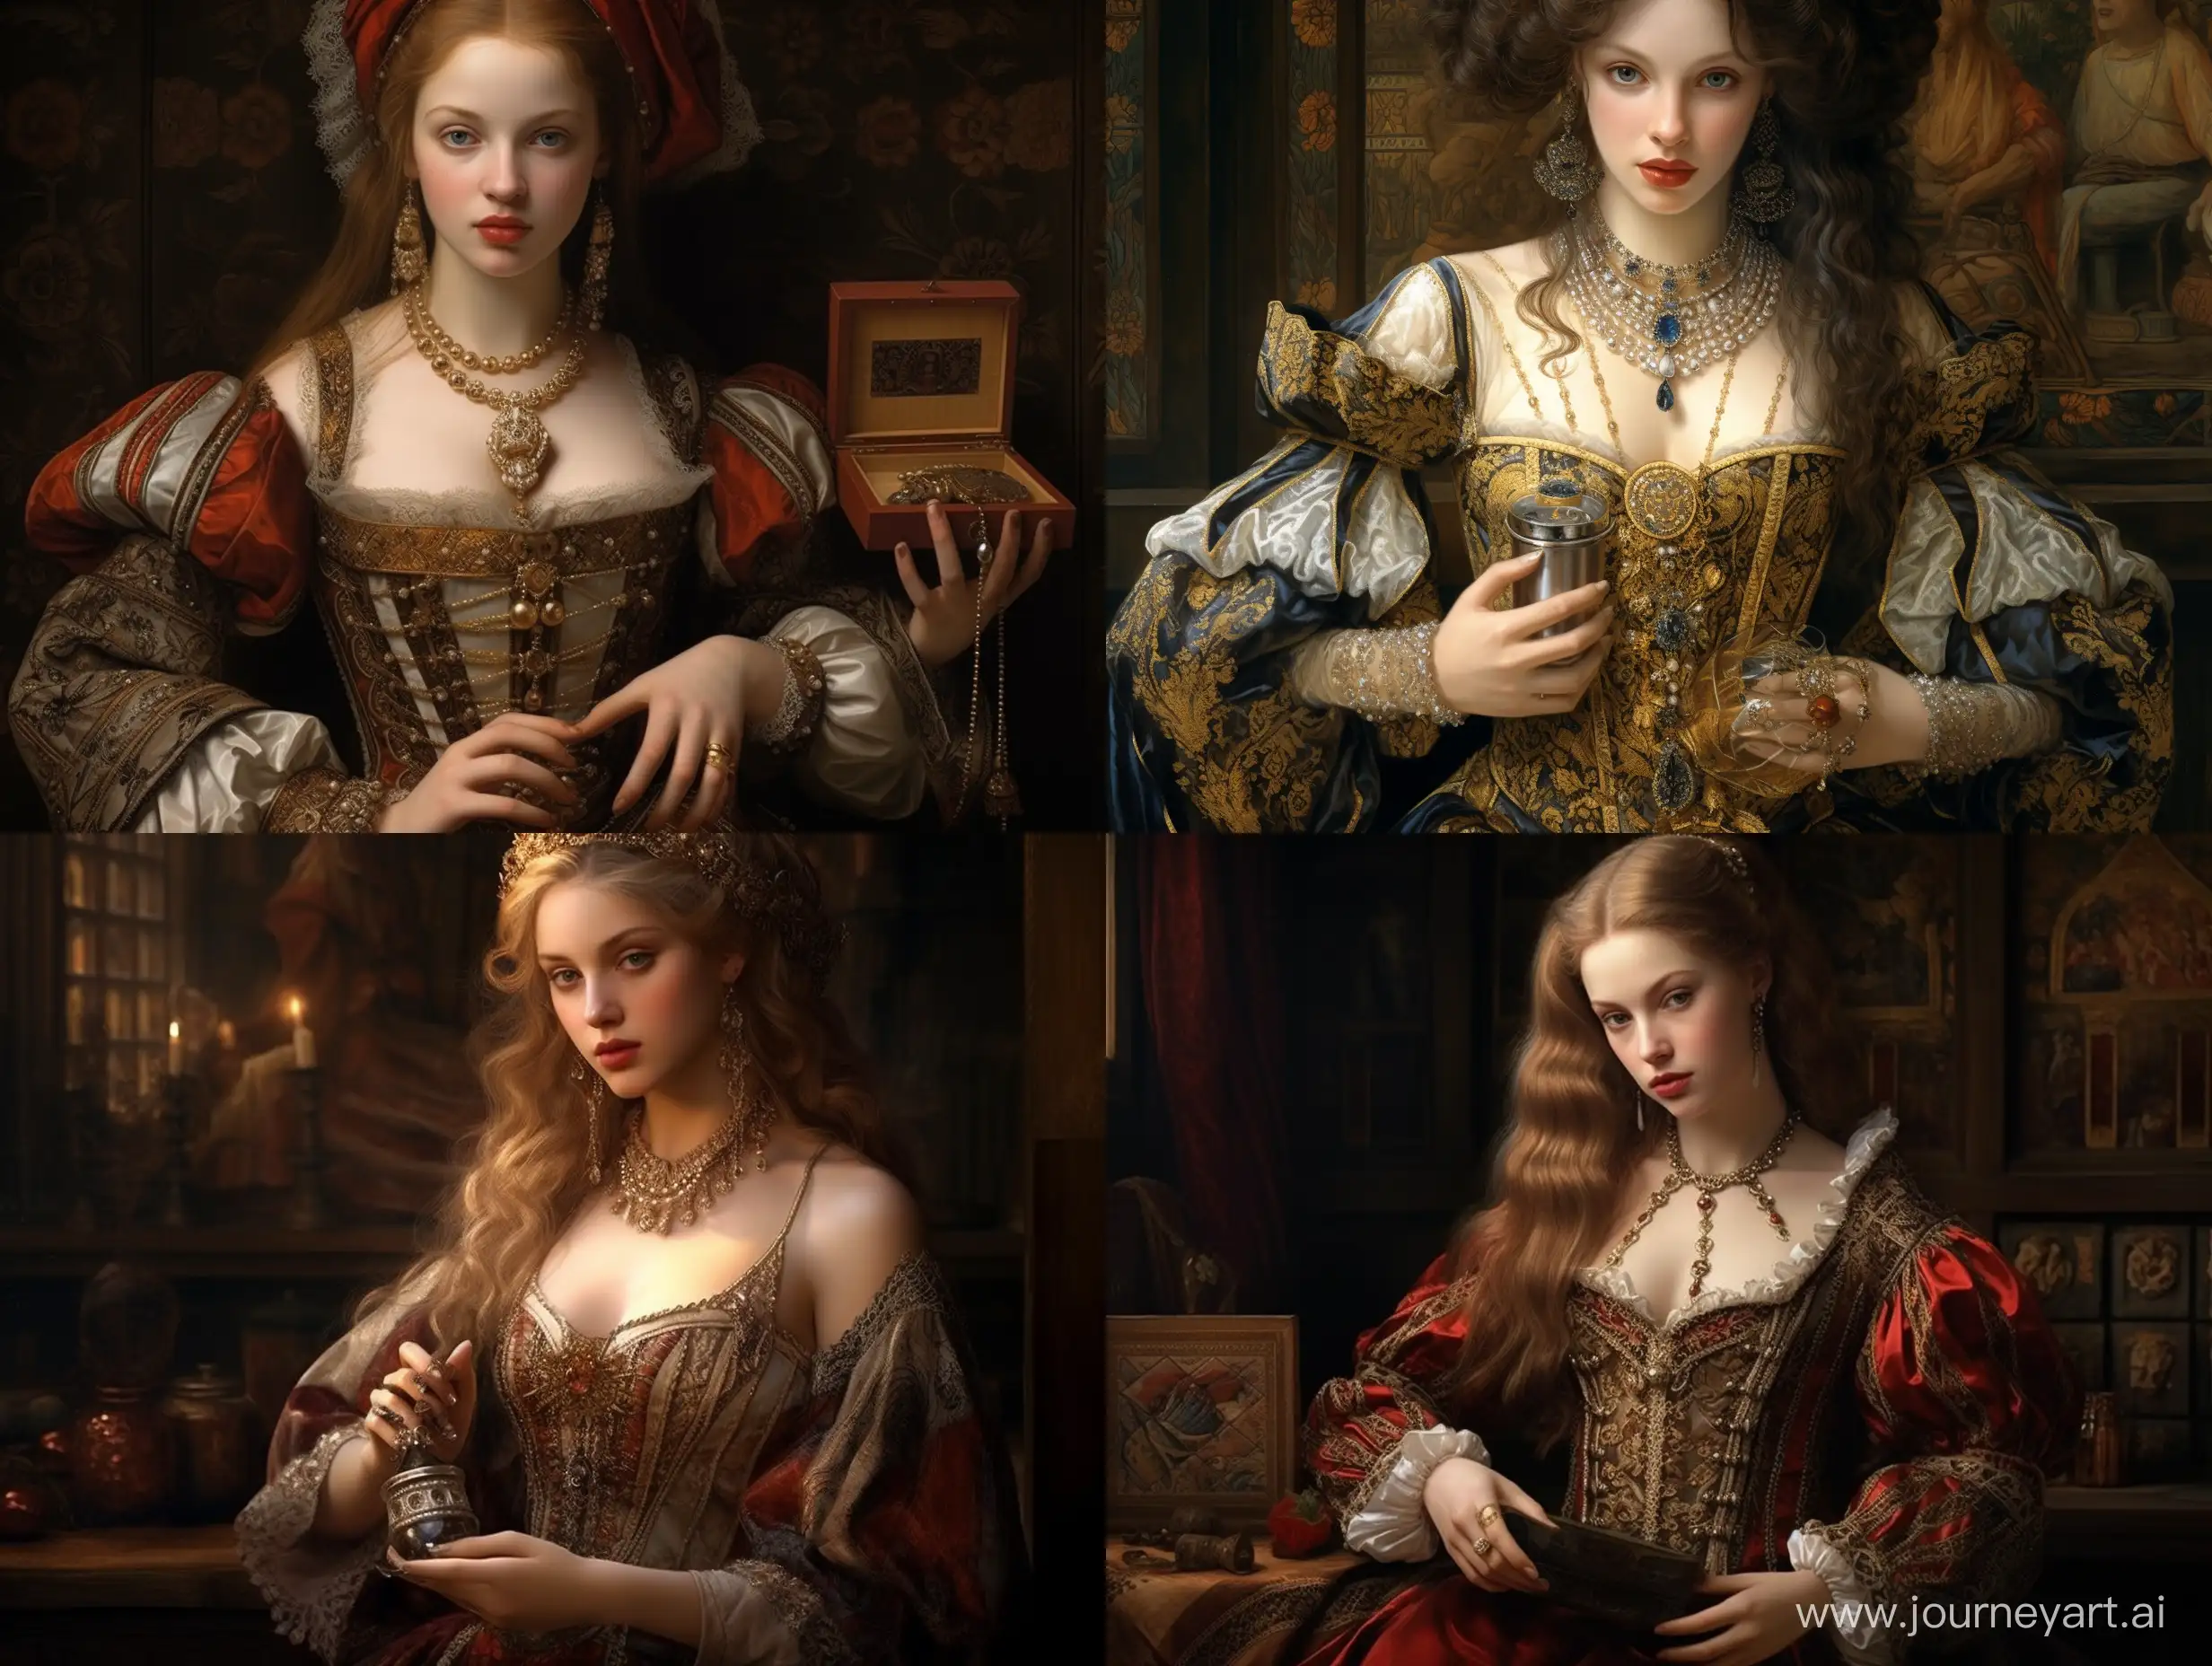 Женщина 16 век, красиво, детально, реалистично, одежда! Того времени, держит в руках парфюм